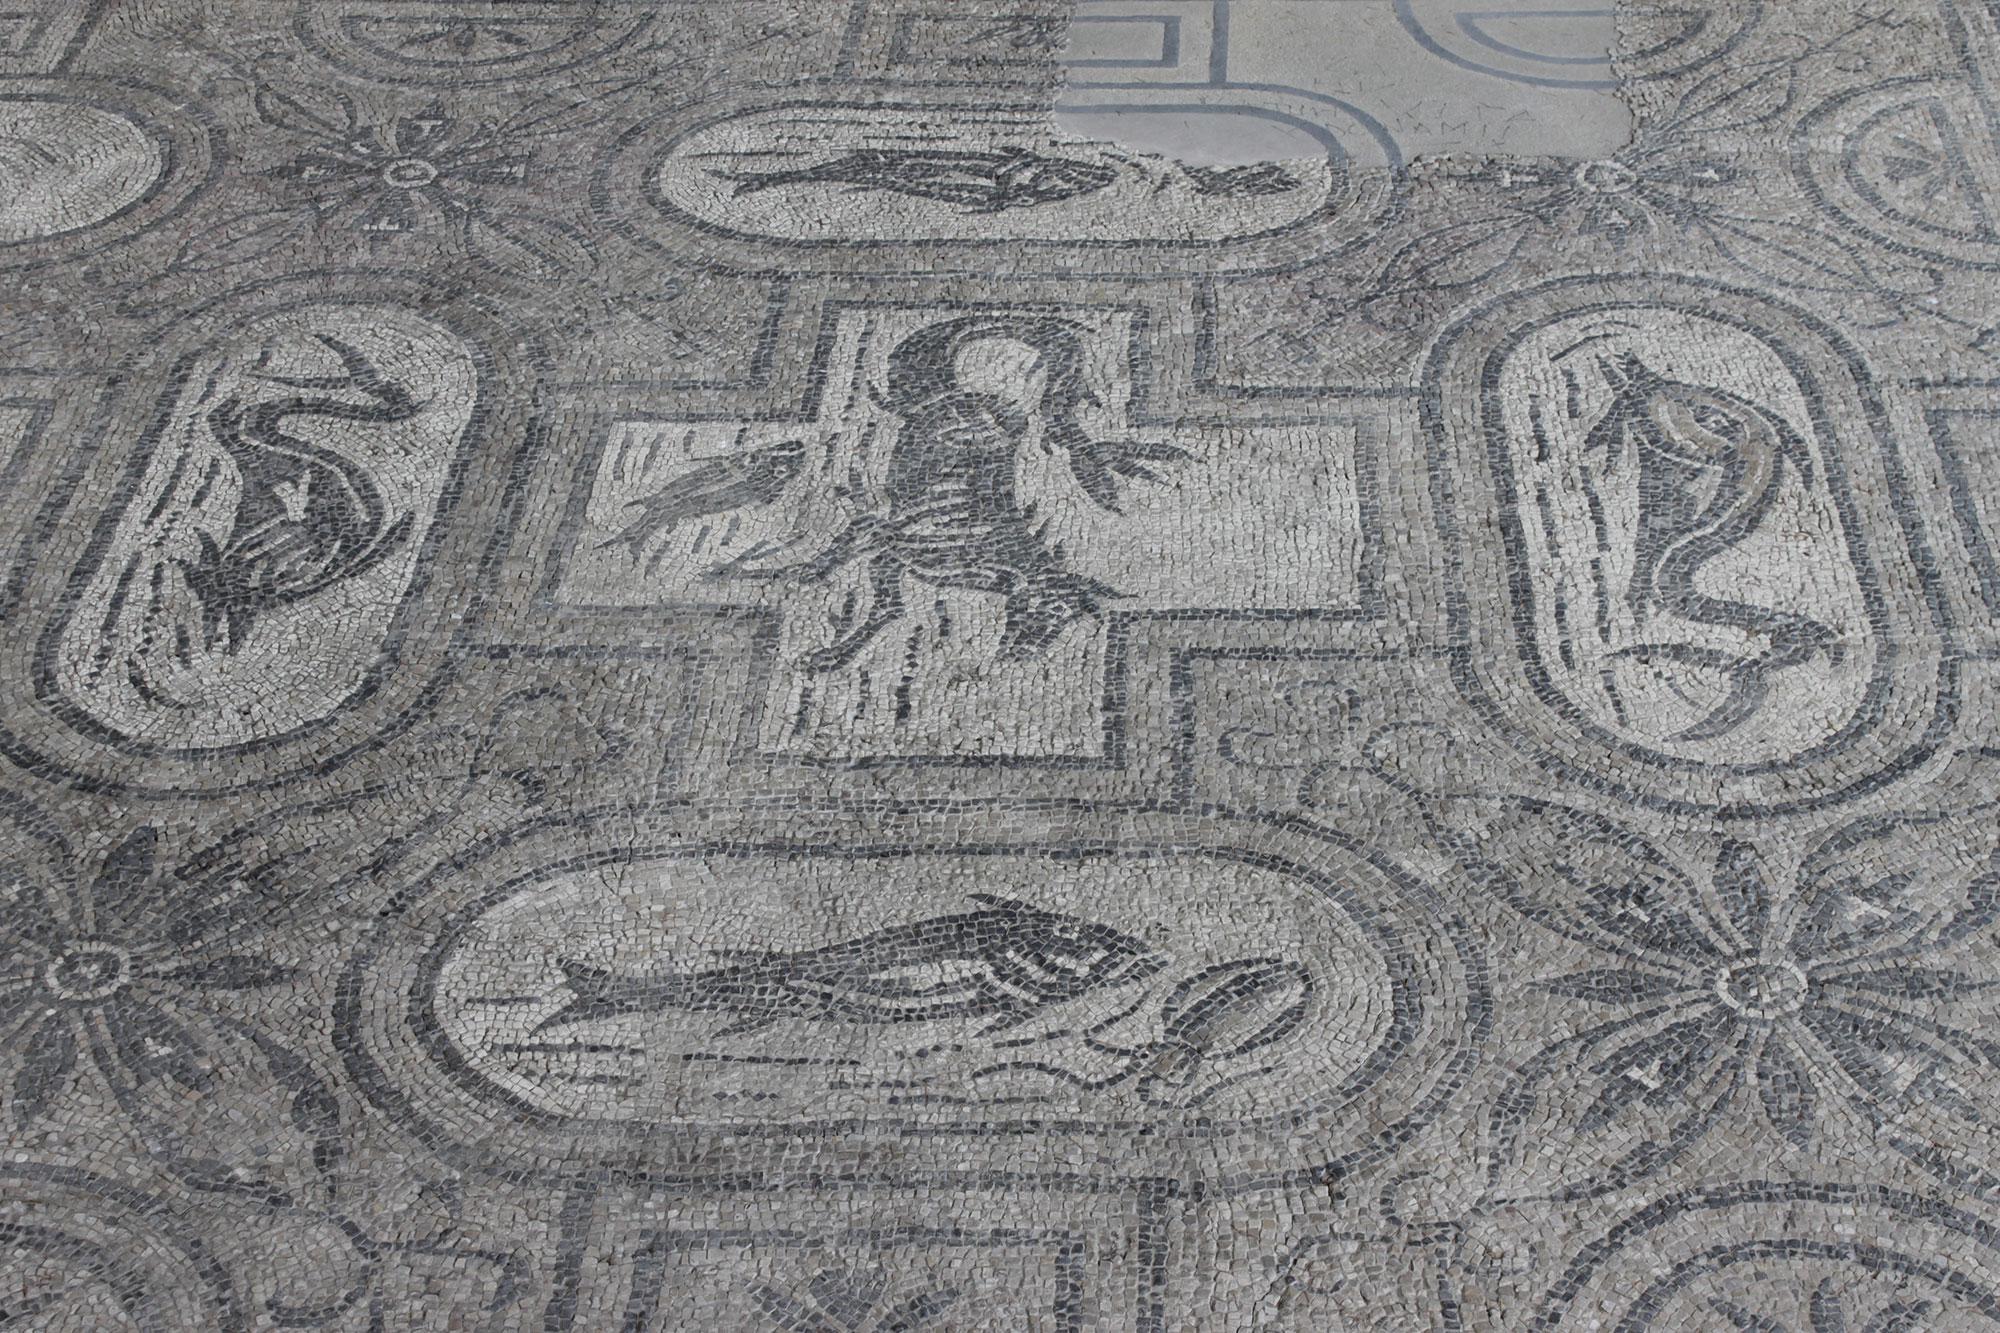 Vasto, Mosaici delle terme (foto di Elio Torlontano, su gentile concessione della Direzione regionale per i beni culturali dell'Abruzzo - Soprintendenza per i beni archeologici dell'Abruzzo)